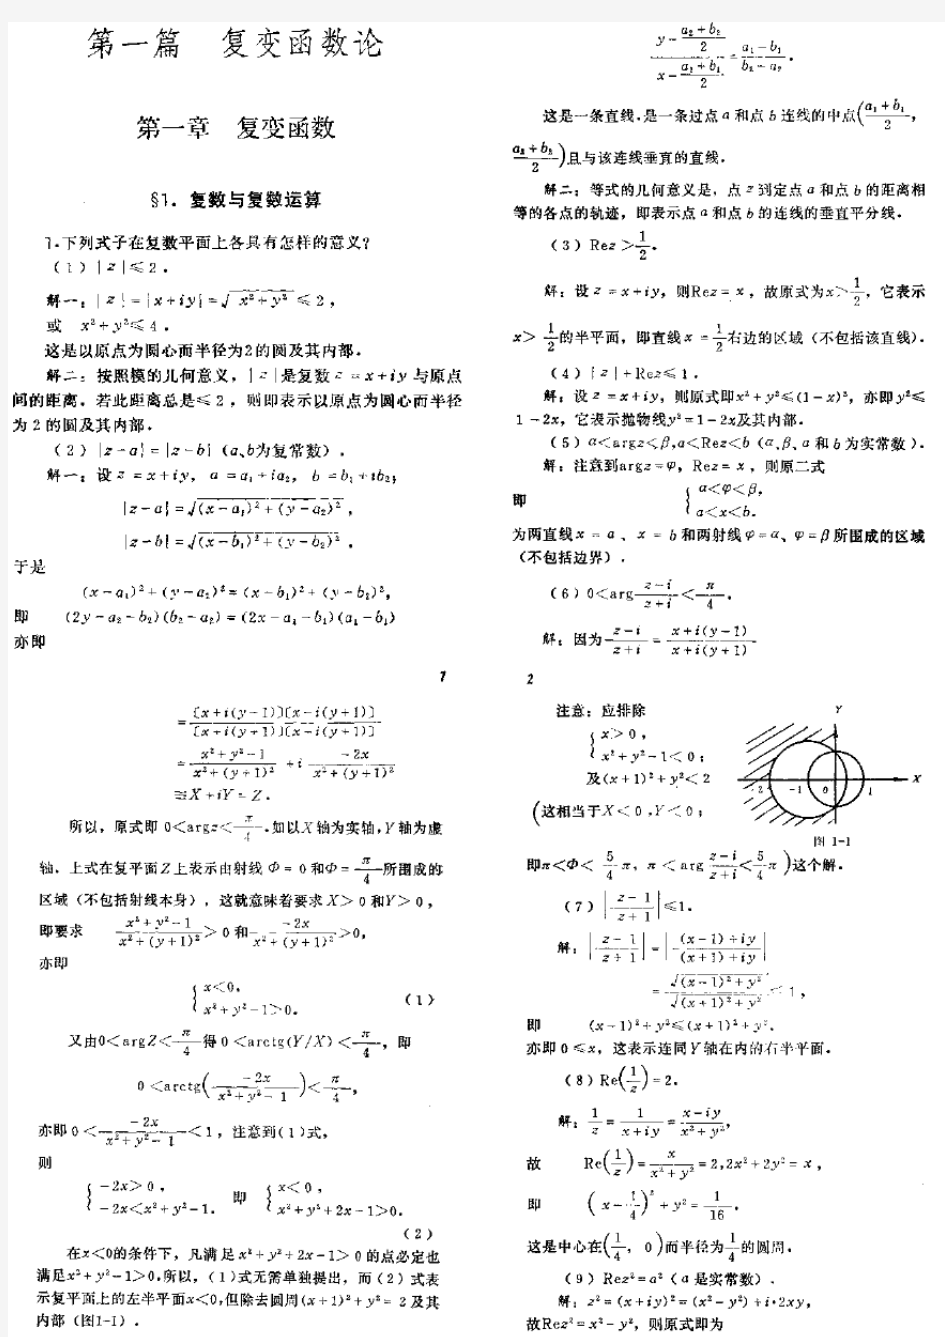 数学物理方法答案 梁昆淼编 (第四版)